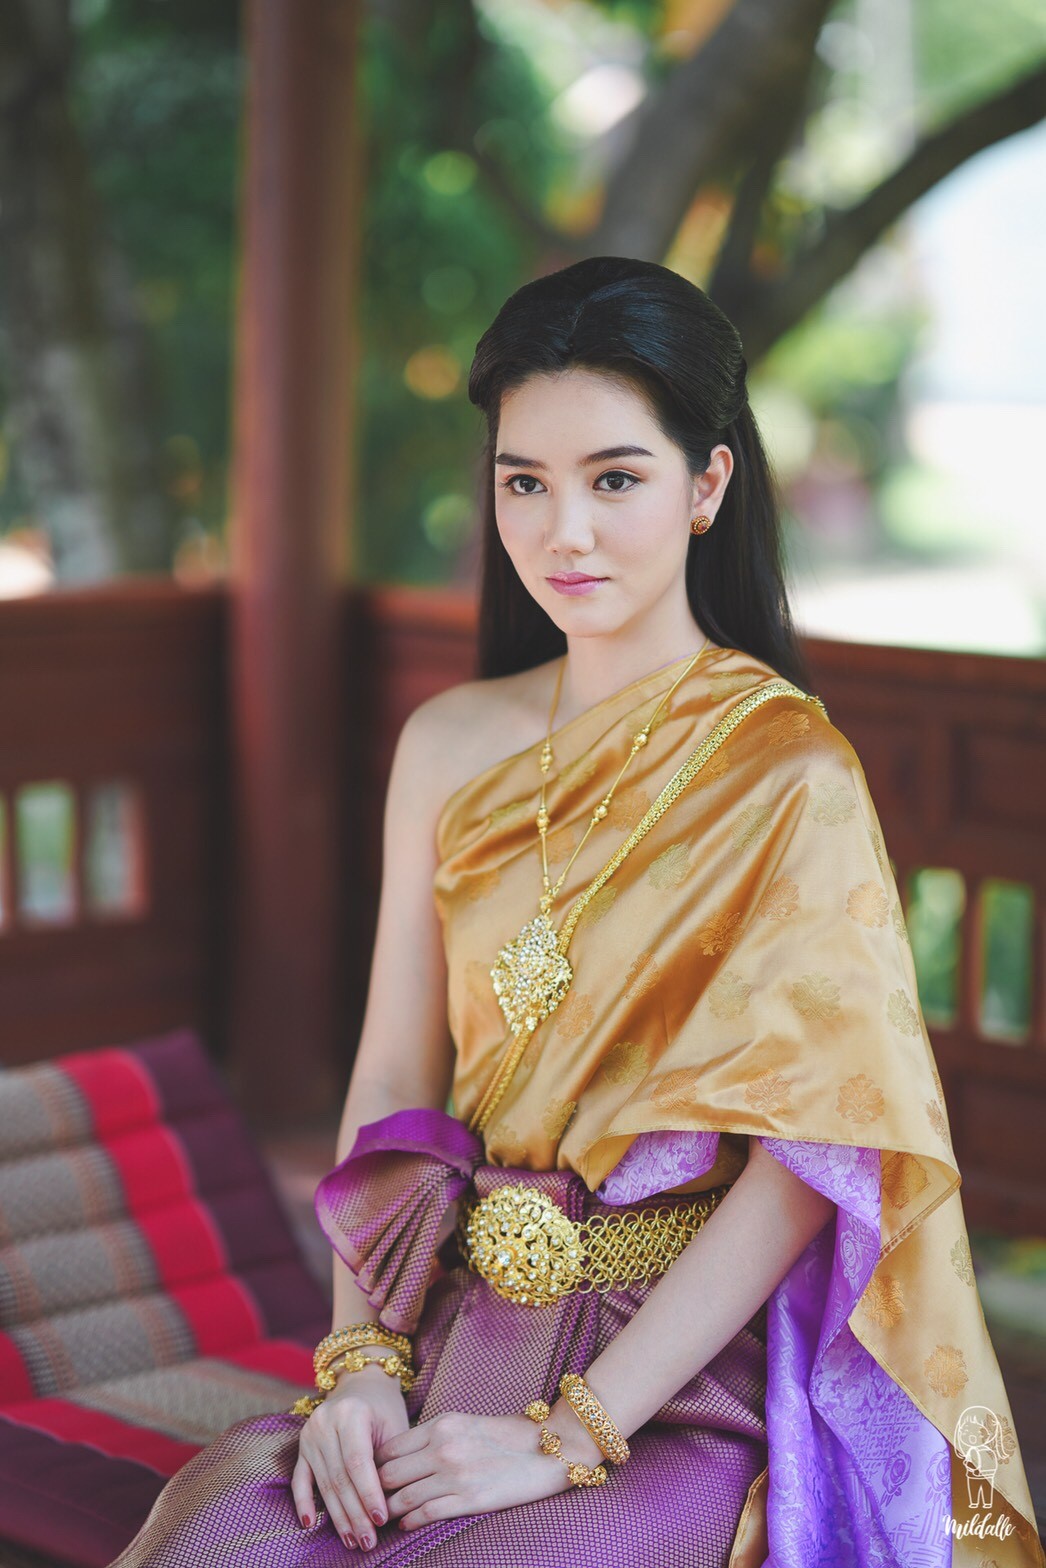 ริชชี่ อรเณศ ชุดไทยสไบเฉียง สวยงดงามตามแบบฉบับหญิงไทยสมัยโบราณ Pantip 7637